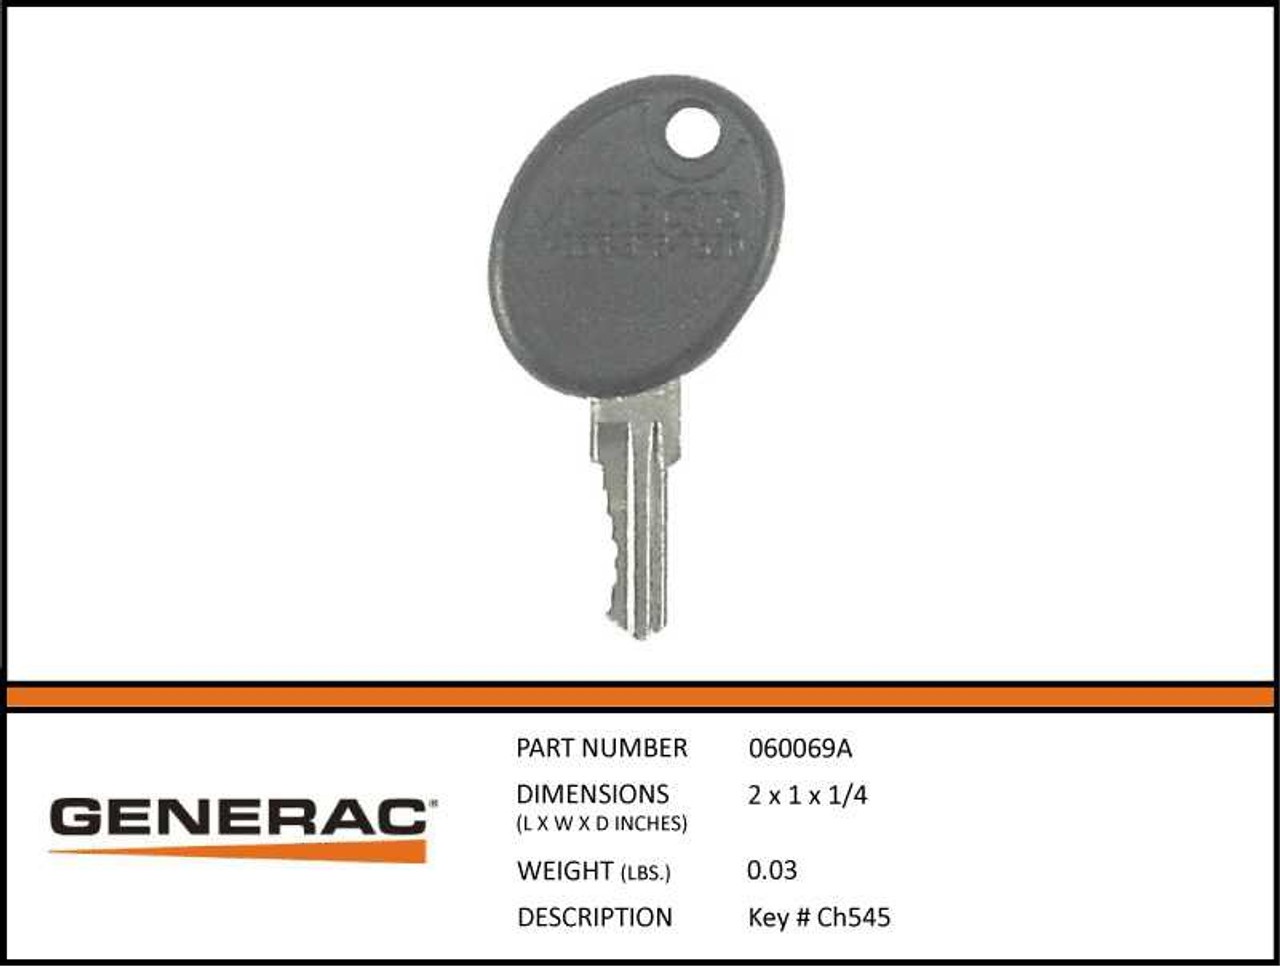 Generac 060069A Generator Key #Ch545